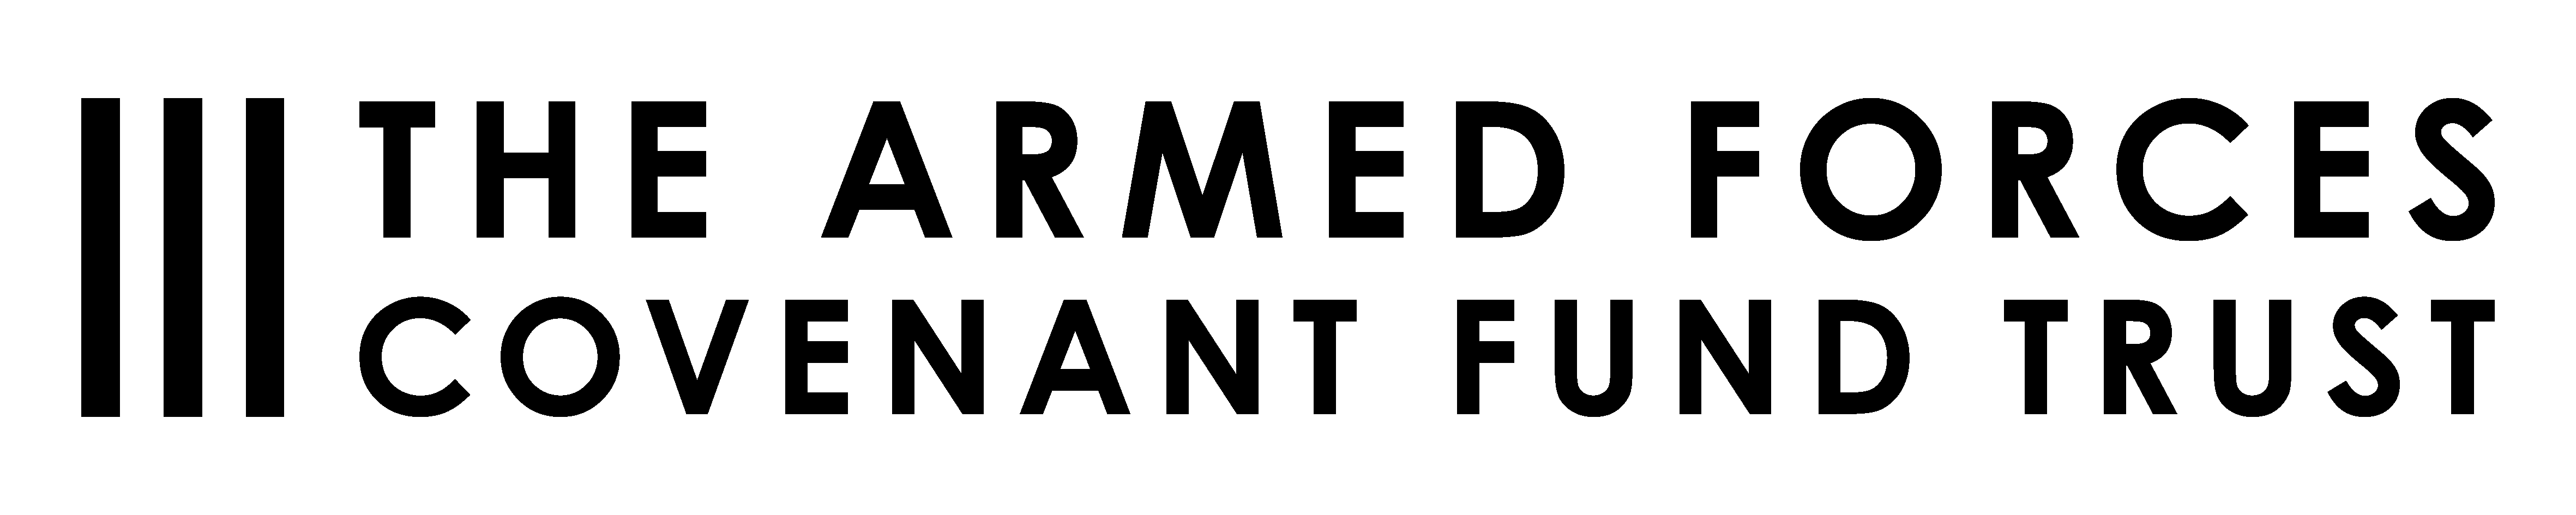 Armed Forces Covenant Fund Trust logo, black, transparent background